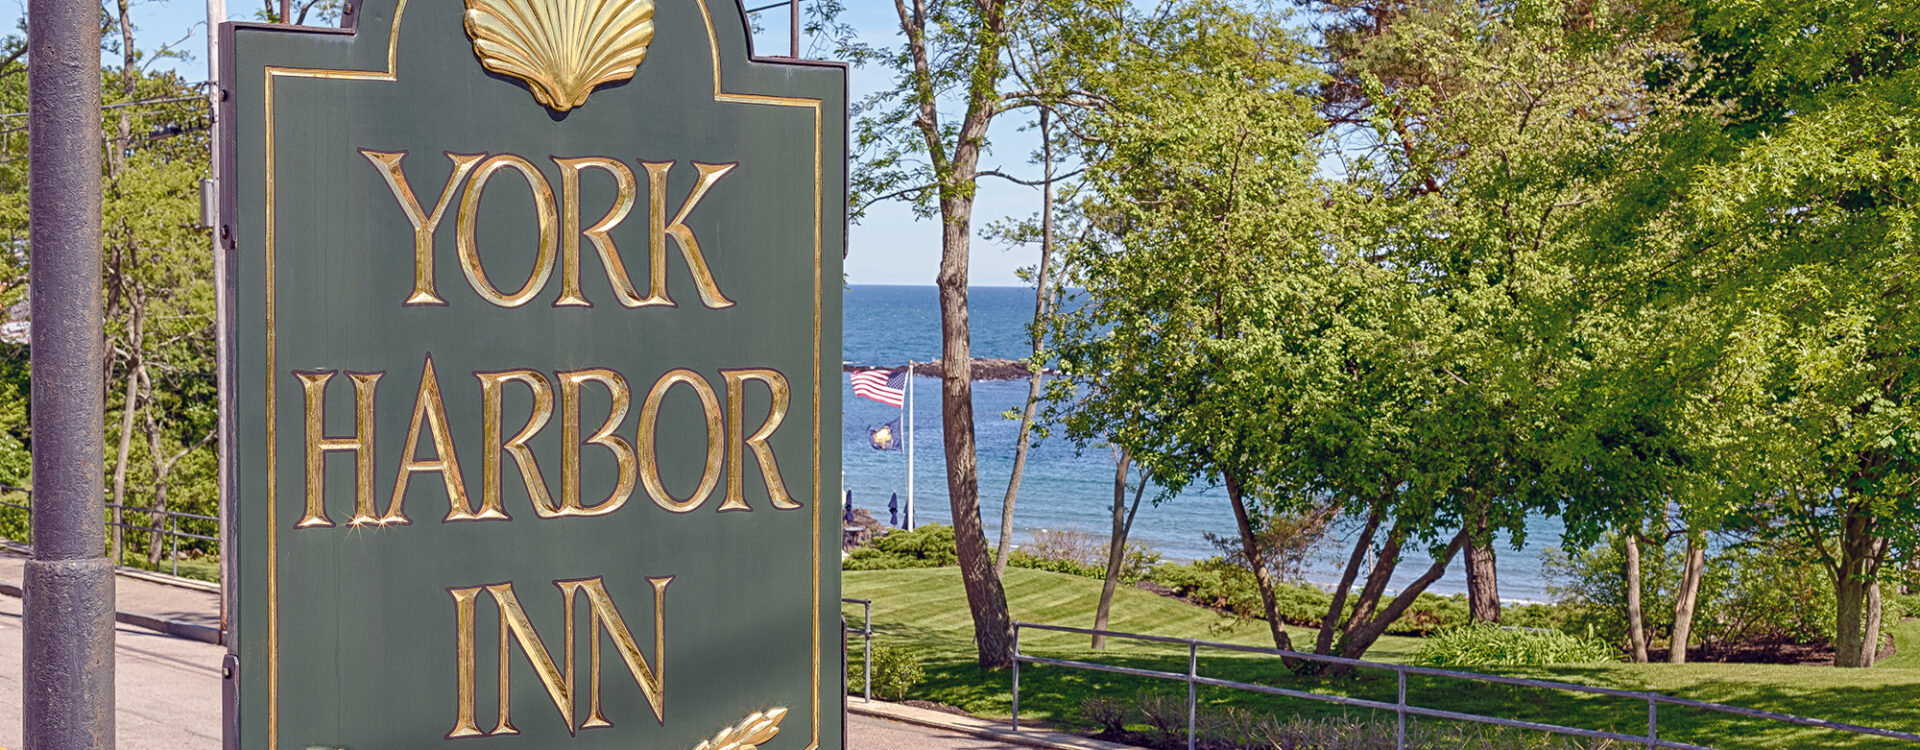 York Harbor Inn Sign with ocean